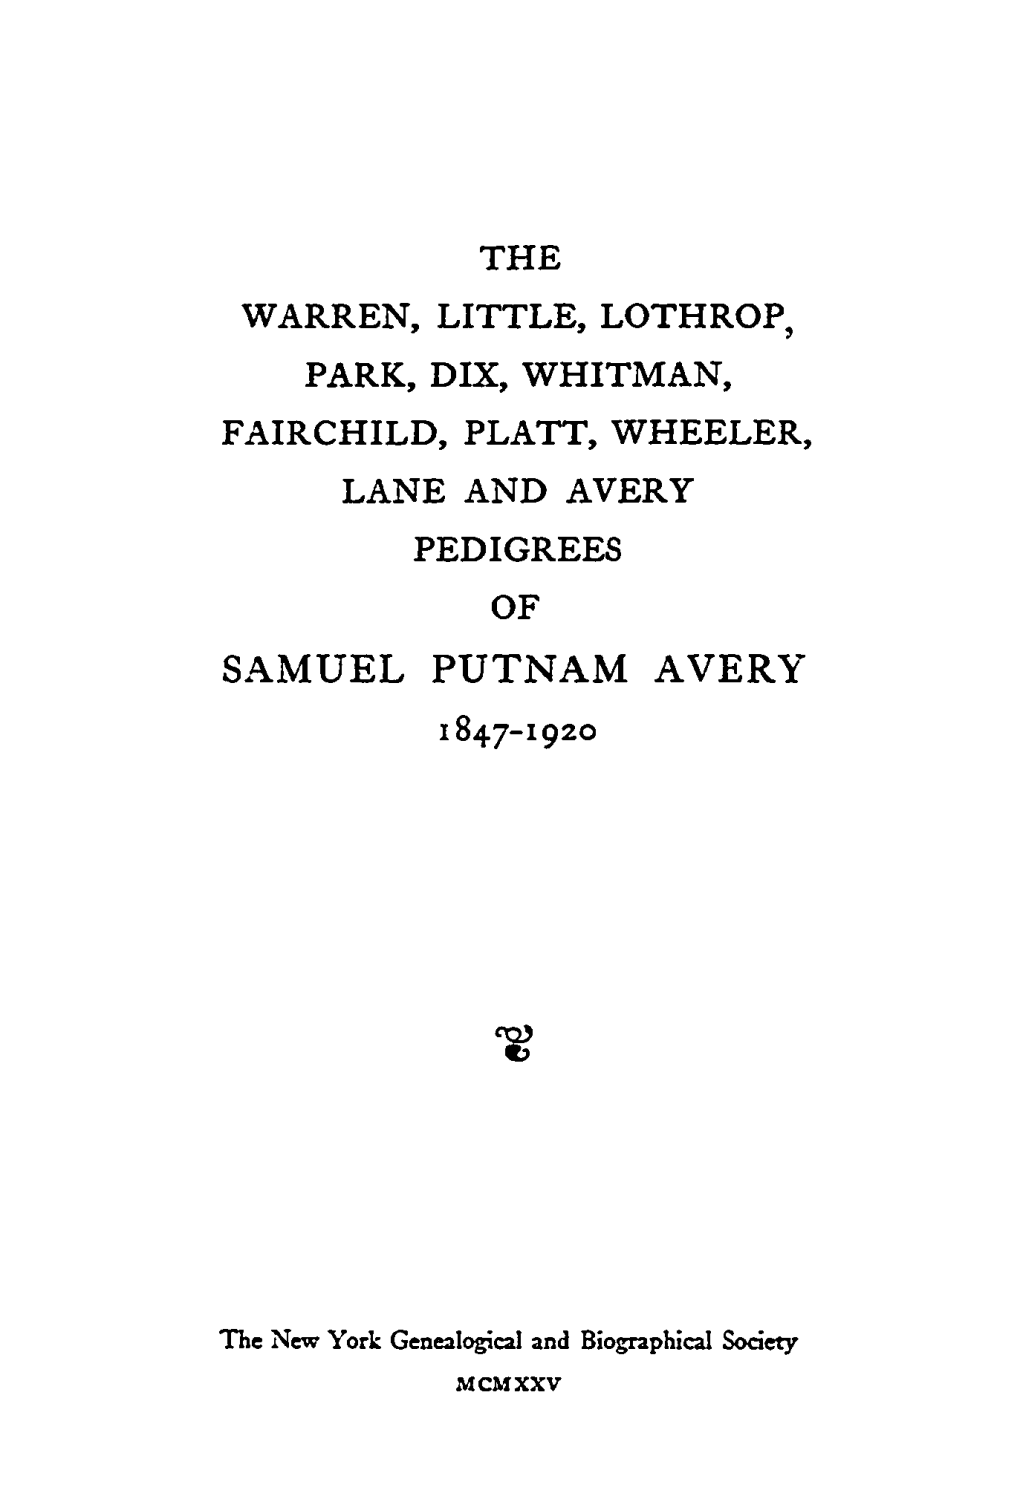 The Warren, Little, Lothrop, Park, Dix, Whitman, Fairchild, Platt, Wheeler, Lane, Avery Pedigrees of Samuel Putnam